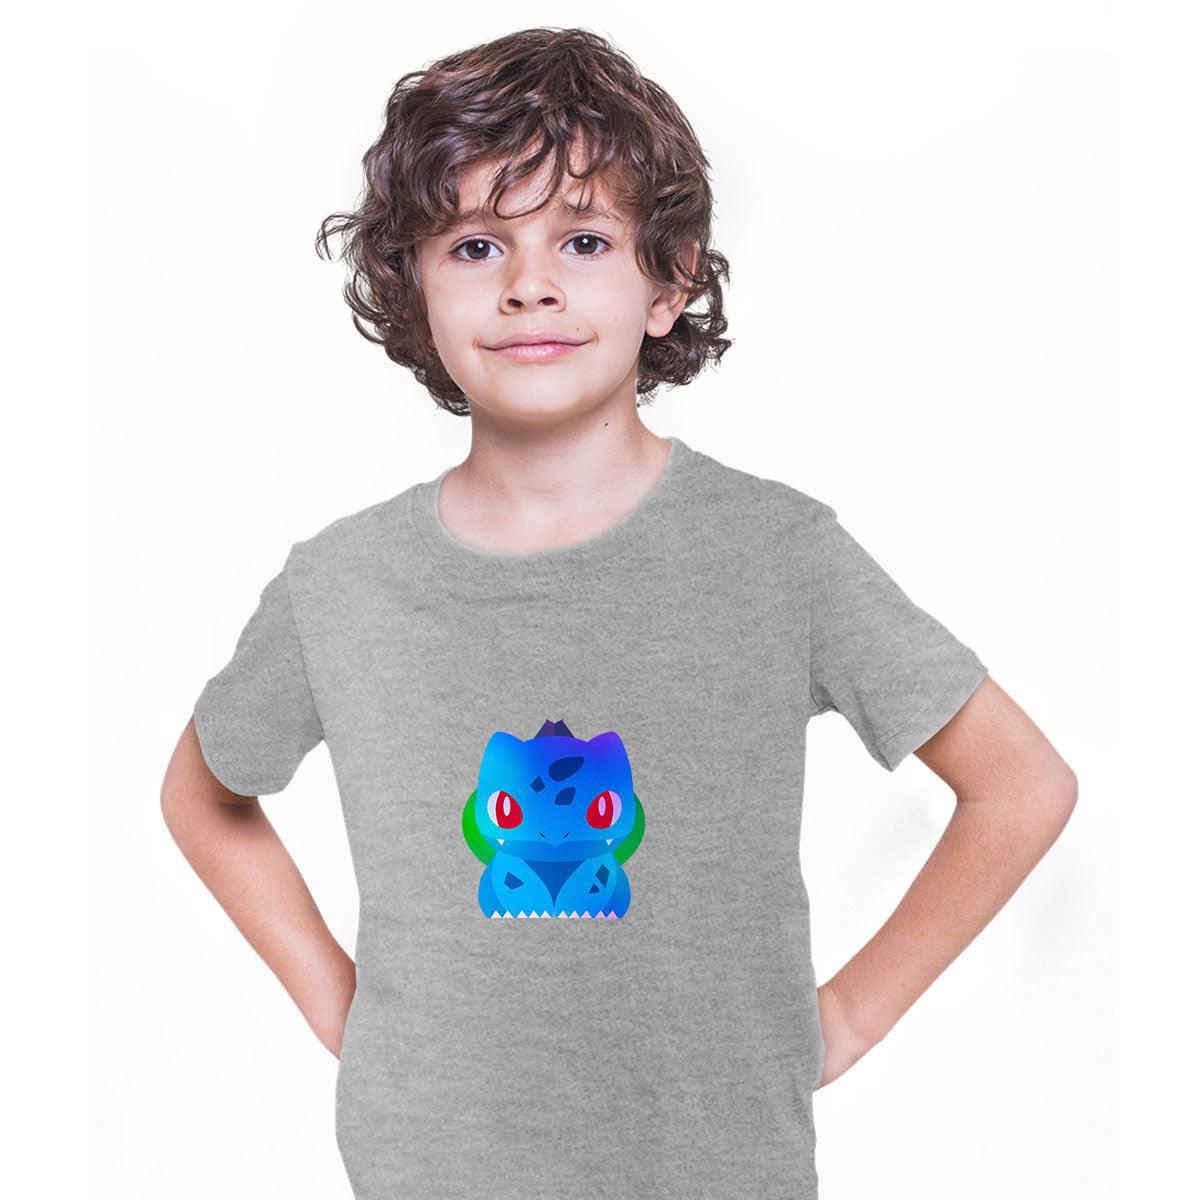 Bulbasaur Pokemon Go T-shirt for Kids Boys Girls Brand New - Kuzi Tees